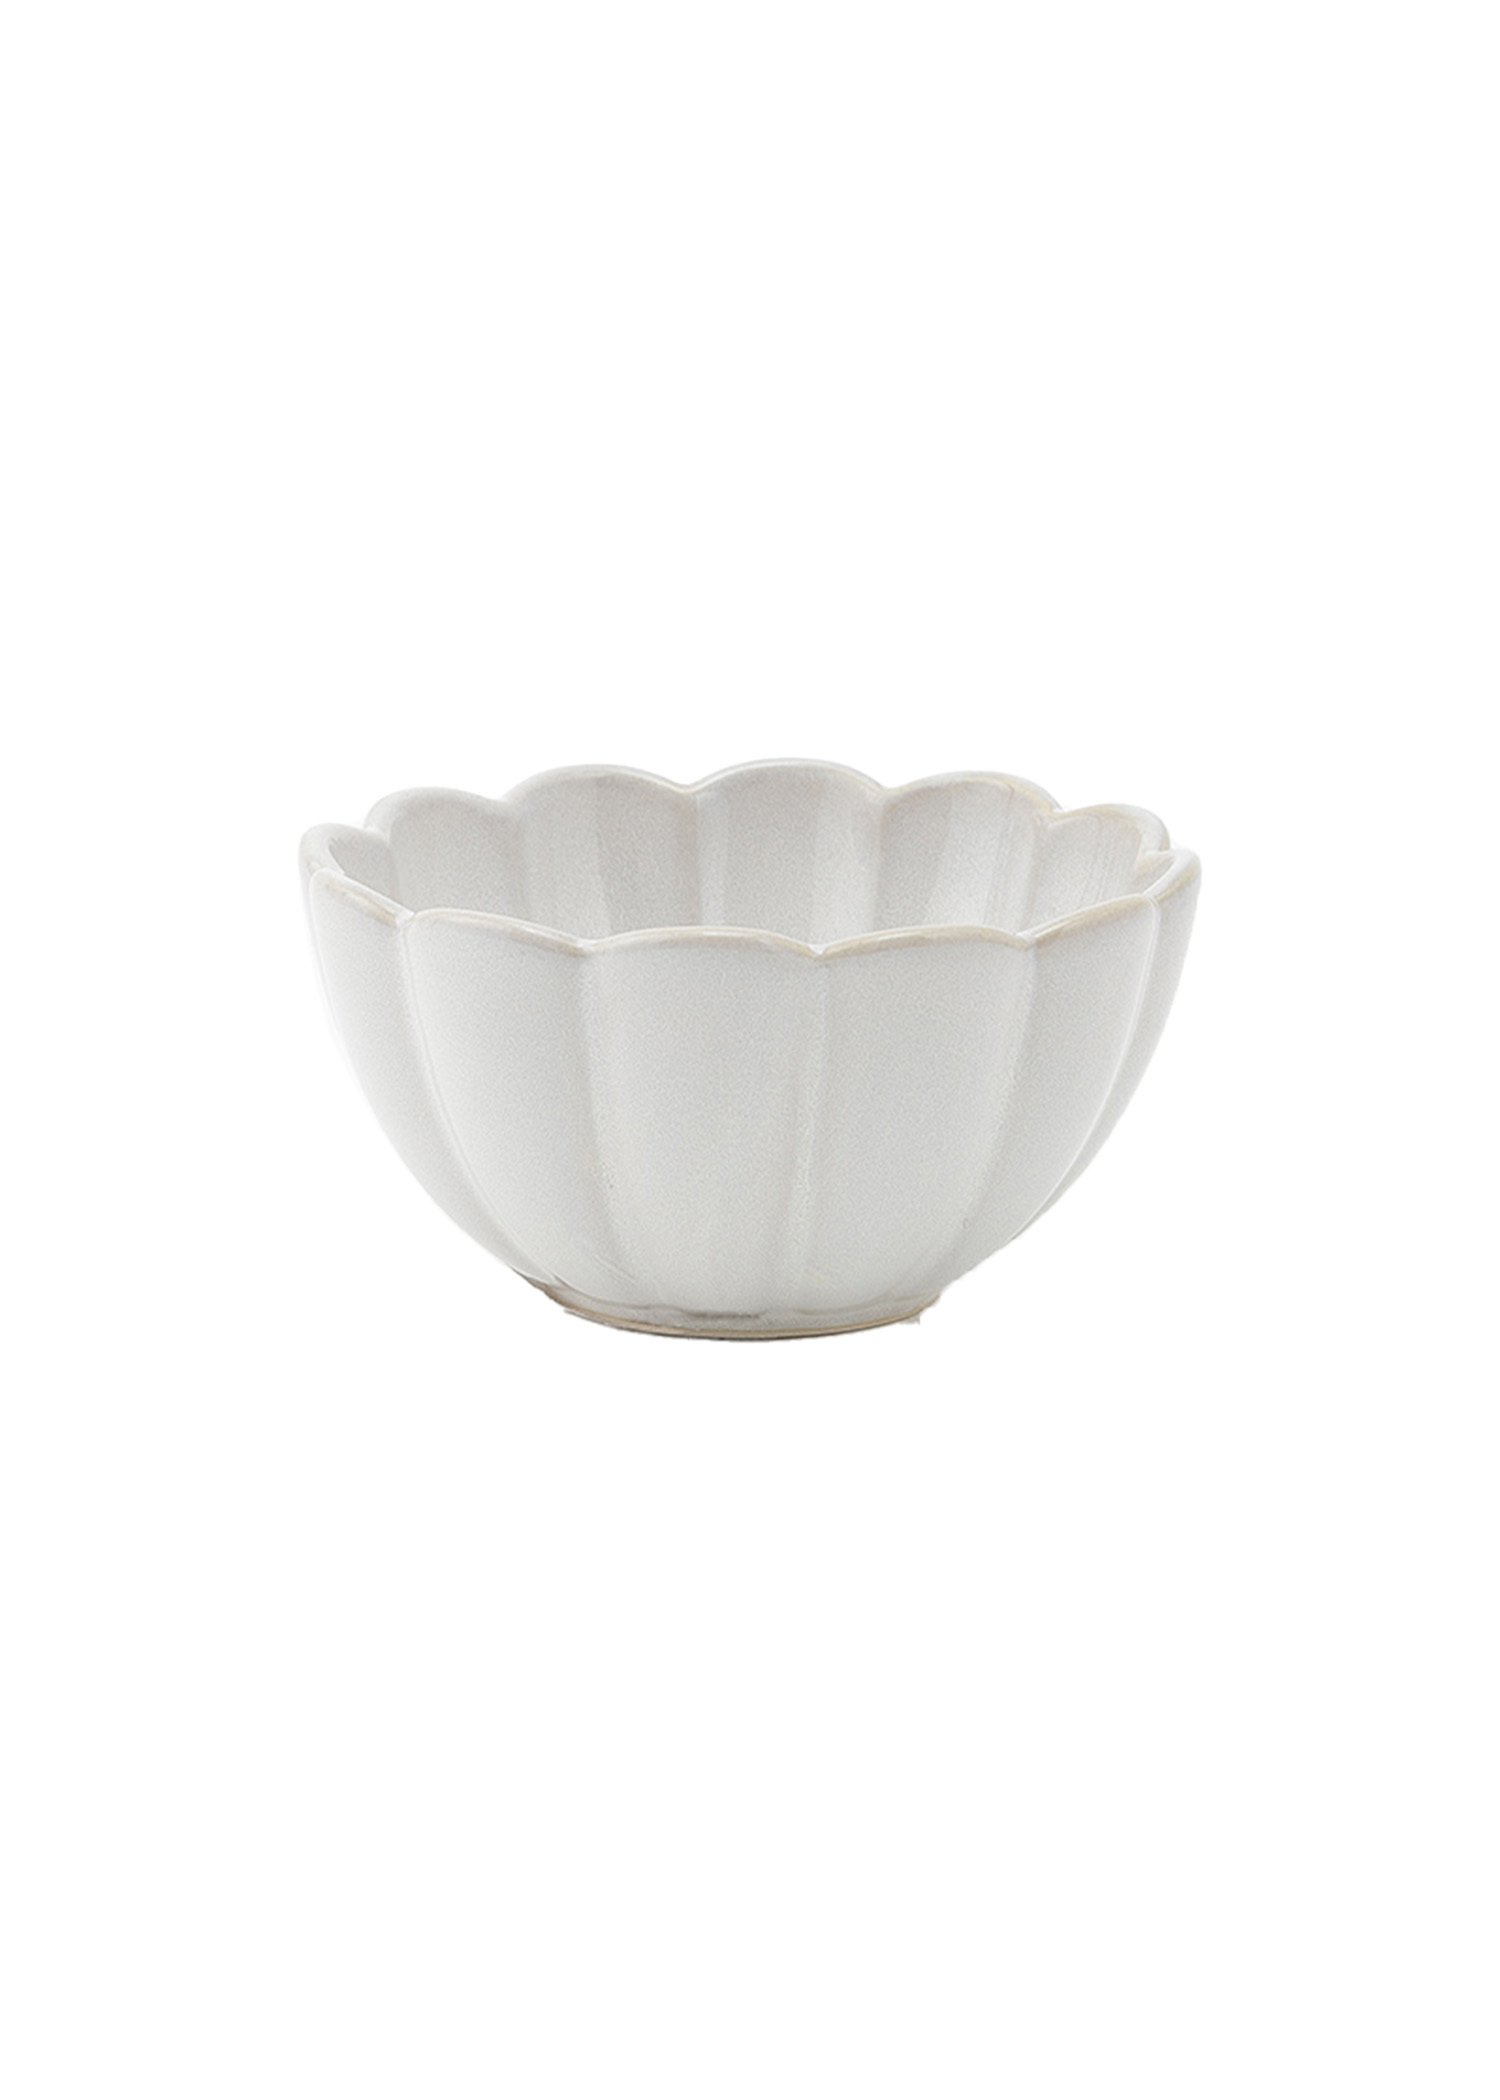 White stoneware bowl